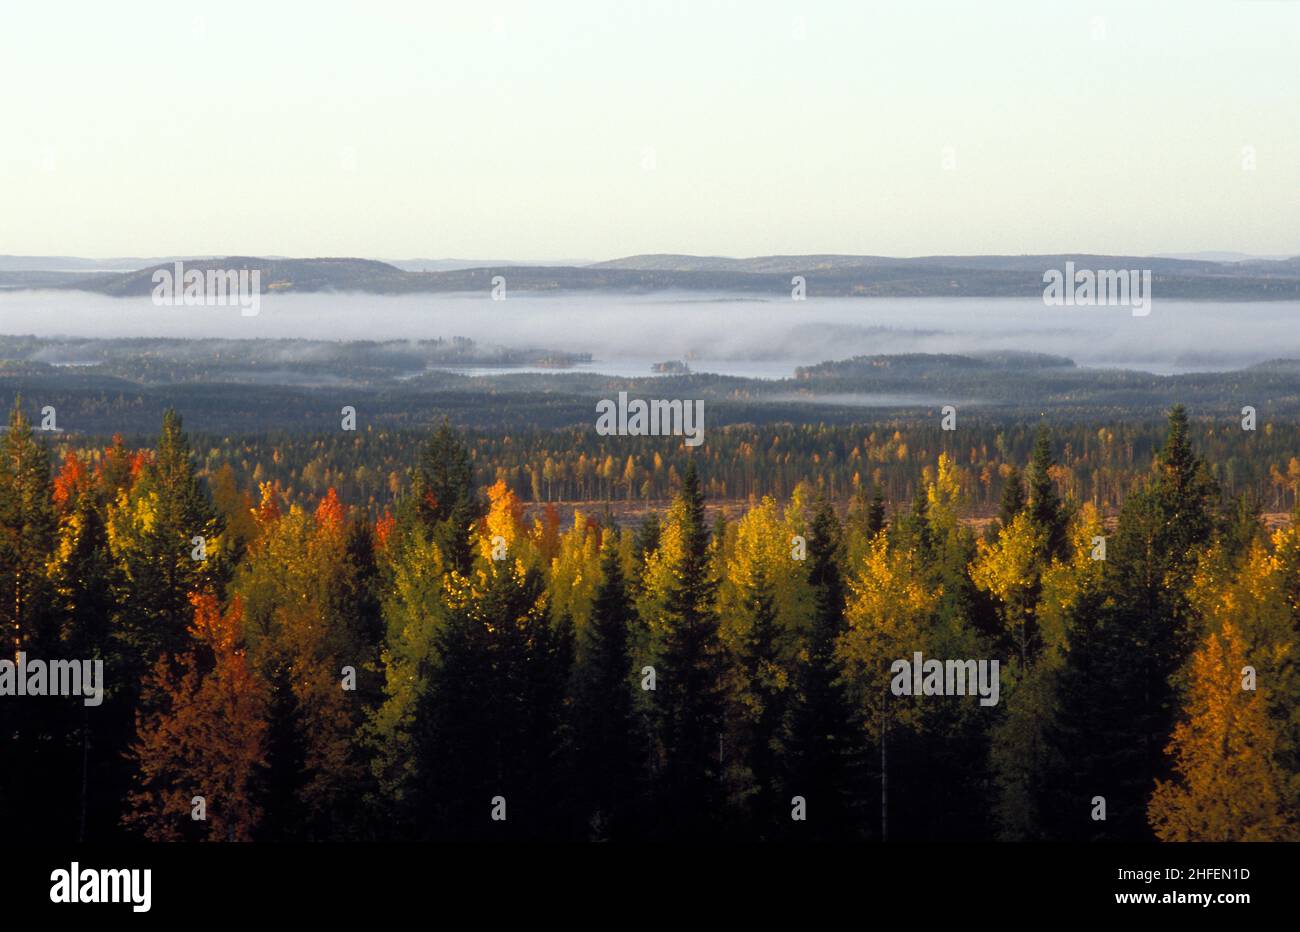 Vastos bosques en otoño, colores de otoño. Colinas, madera y sol. Analógico. Antes de la era de los molinos de viento industriales. Foto de stock